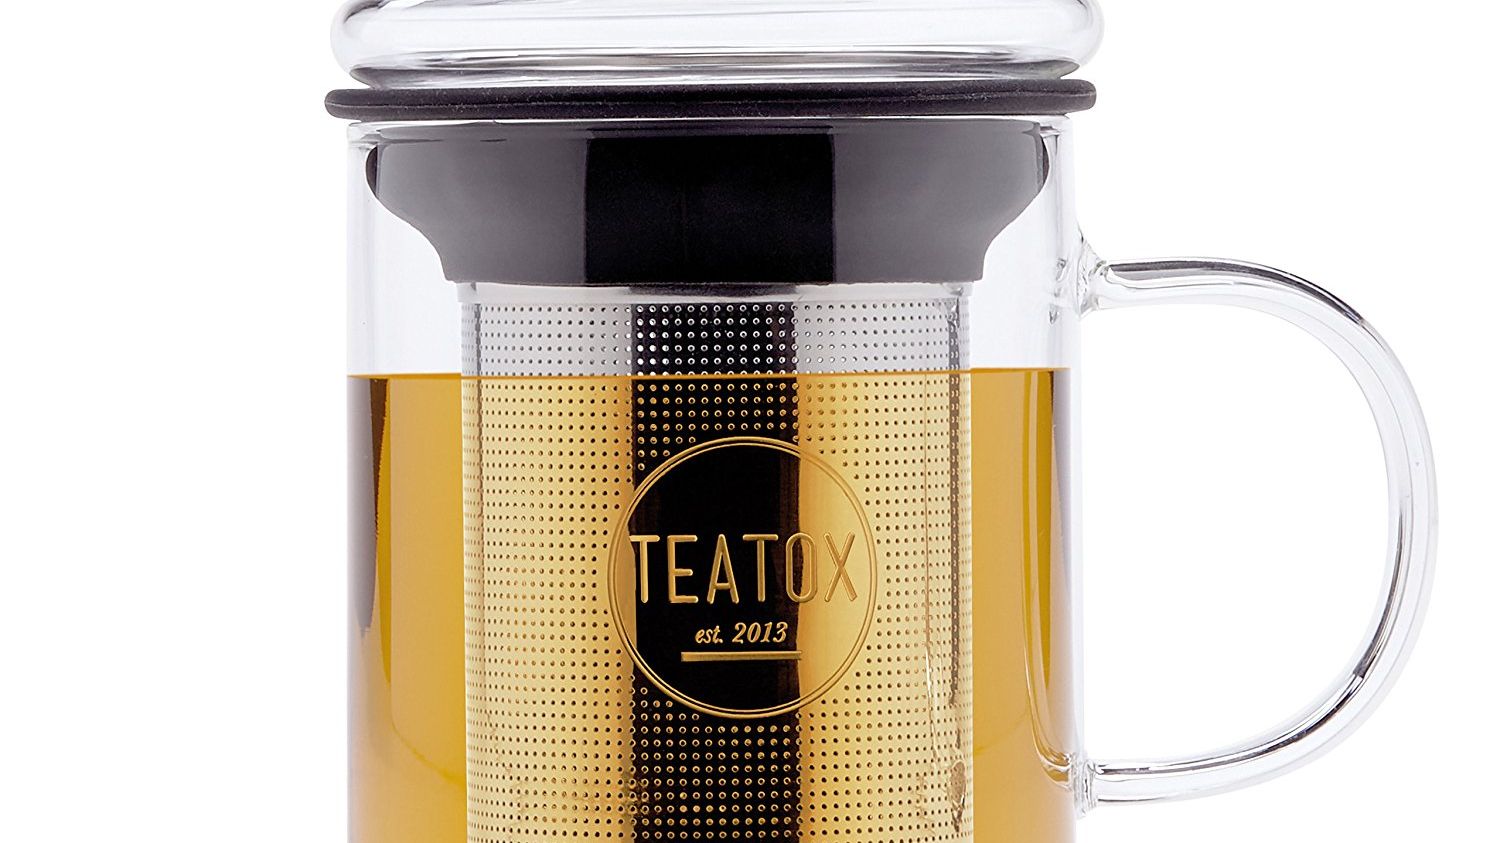 Infuseur à thé en verre - Panda Tea